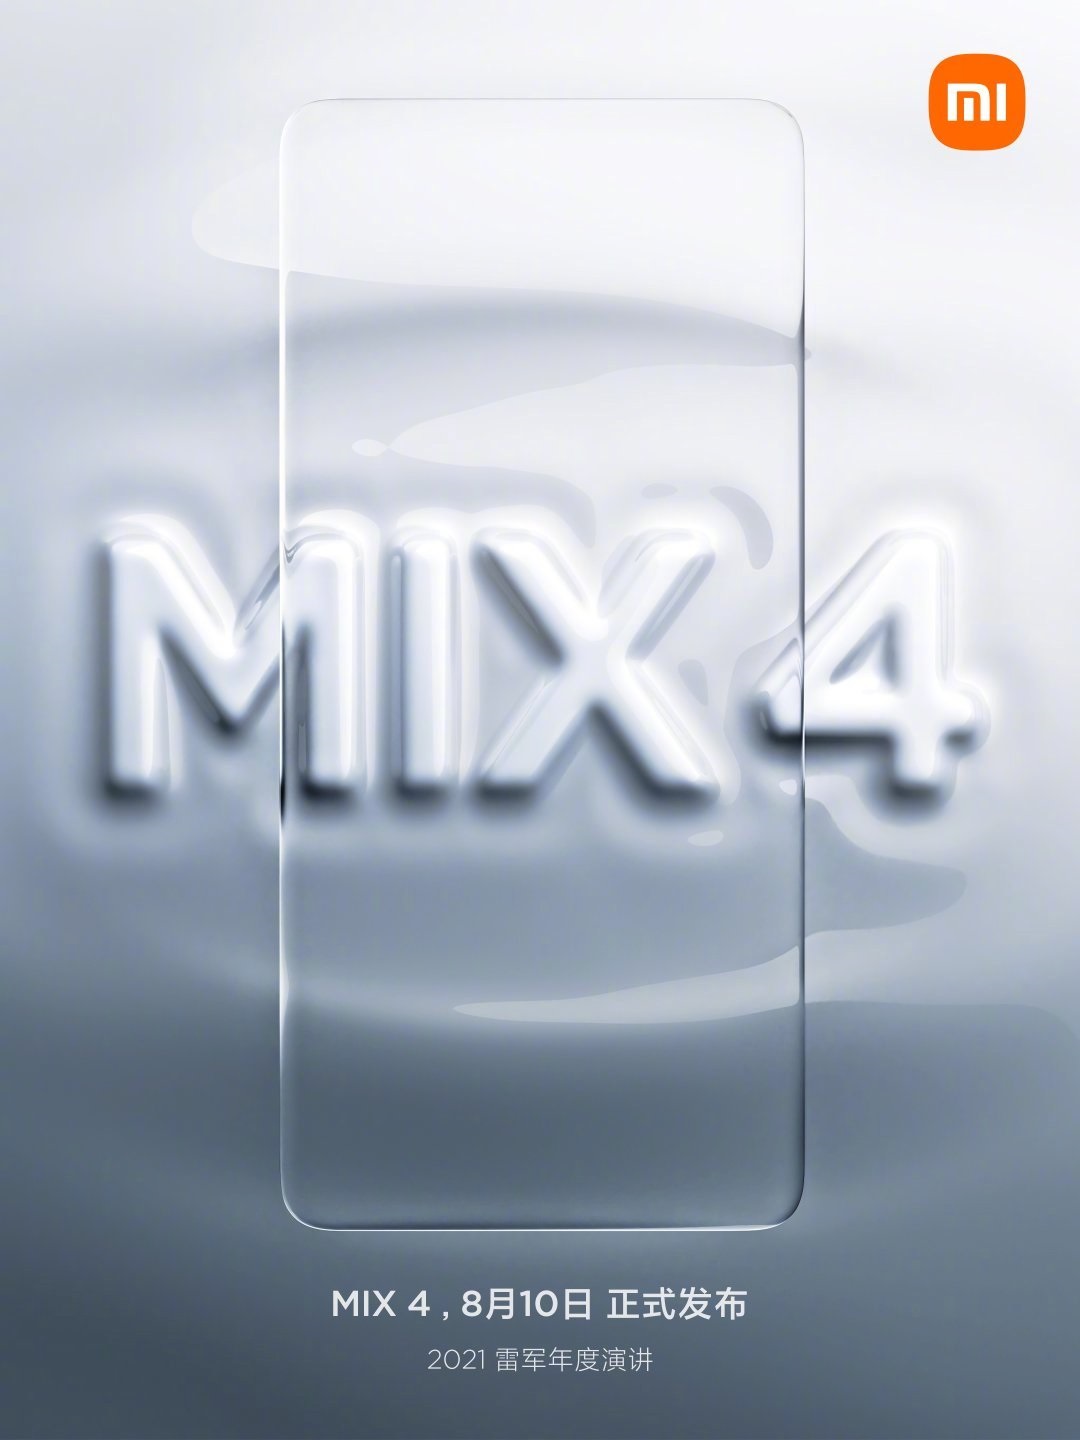 Mi MIX 4 featured